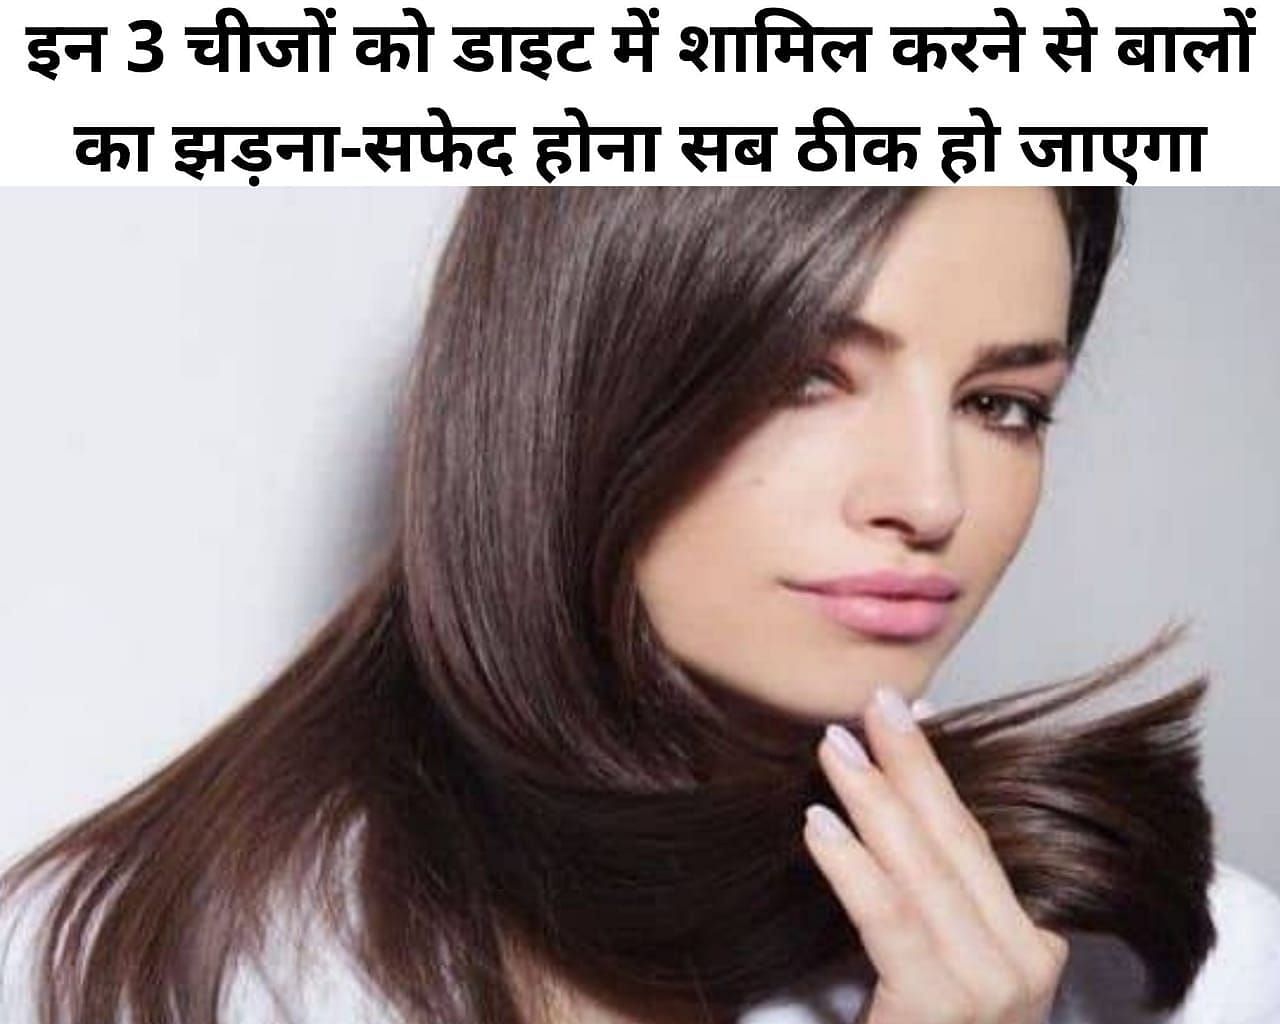 इन 3 चीजों को डाइट में शामिल करने से बालों का झड़ना-सफेद होना सब ठीक हो जाएगा (फोटो - sportskeeda hindi)